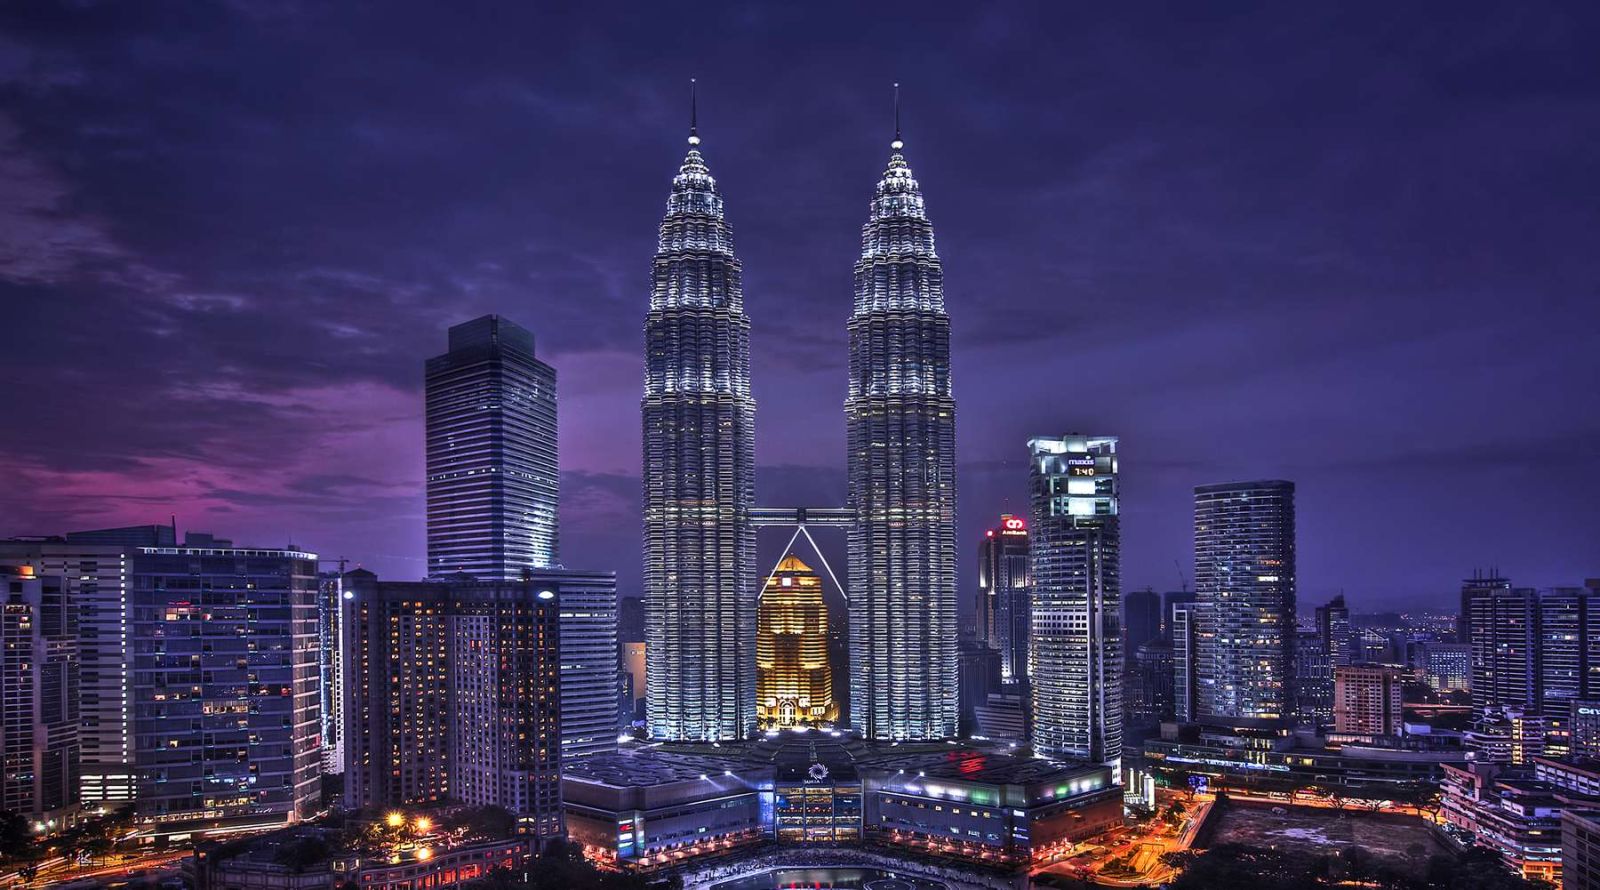 Tháp đôi Petronas có tất cả 88 tầng được thiết kế bởi hai kiến trúc sư nổi tiếng Cesar Pelli và Associates.